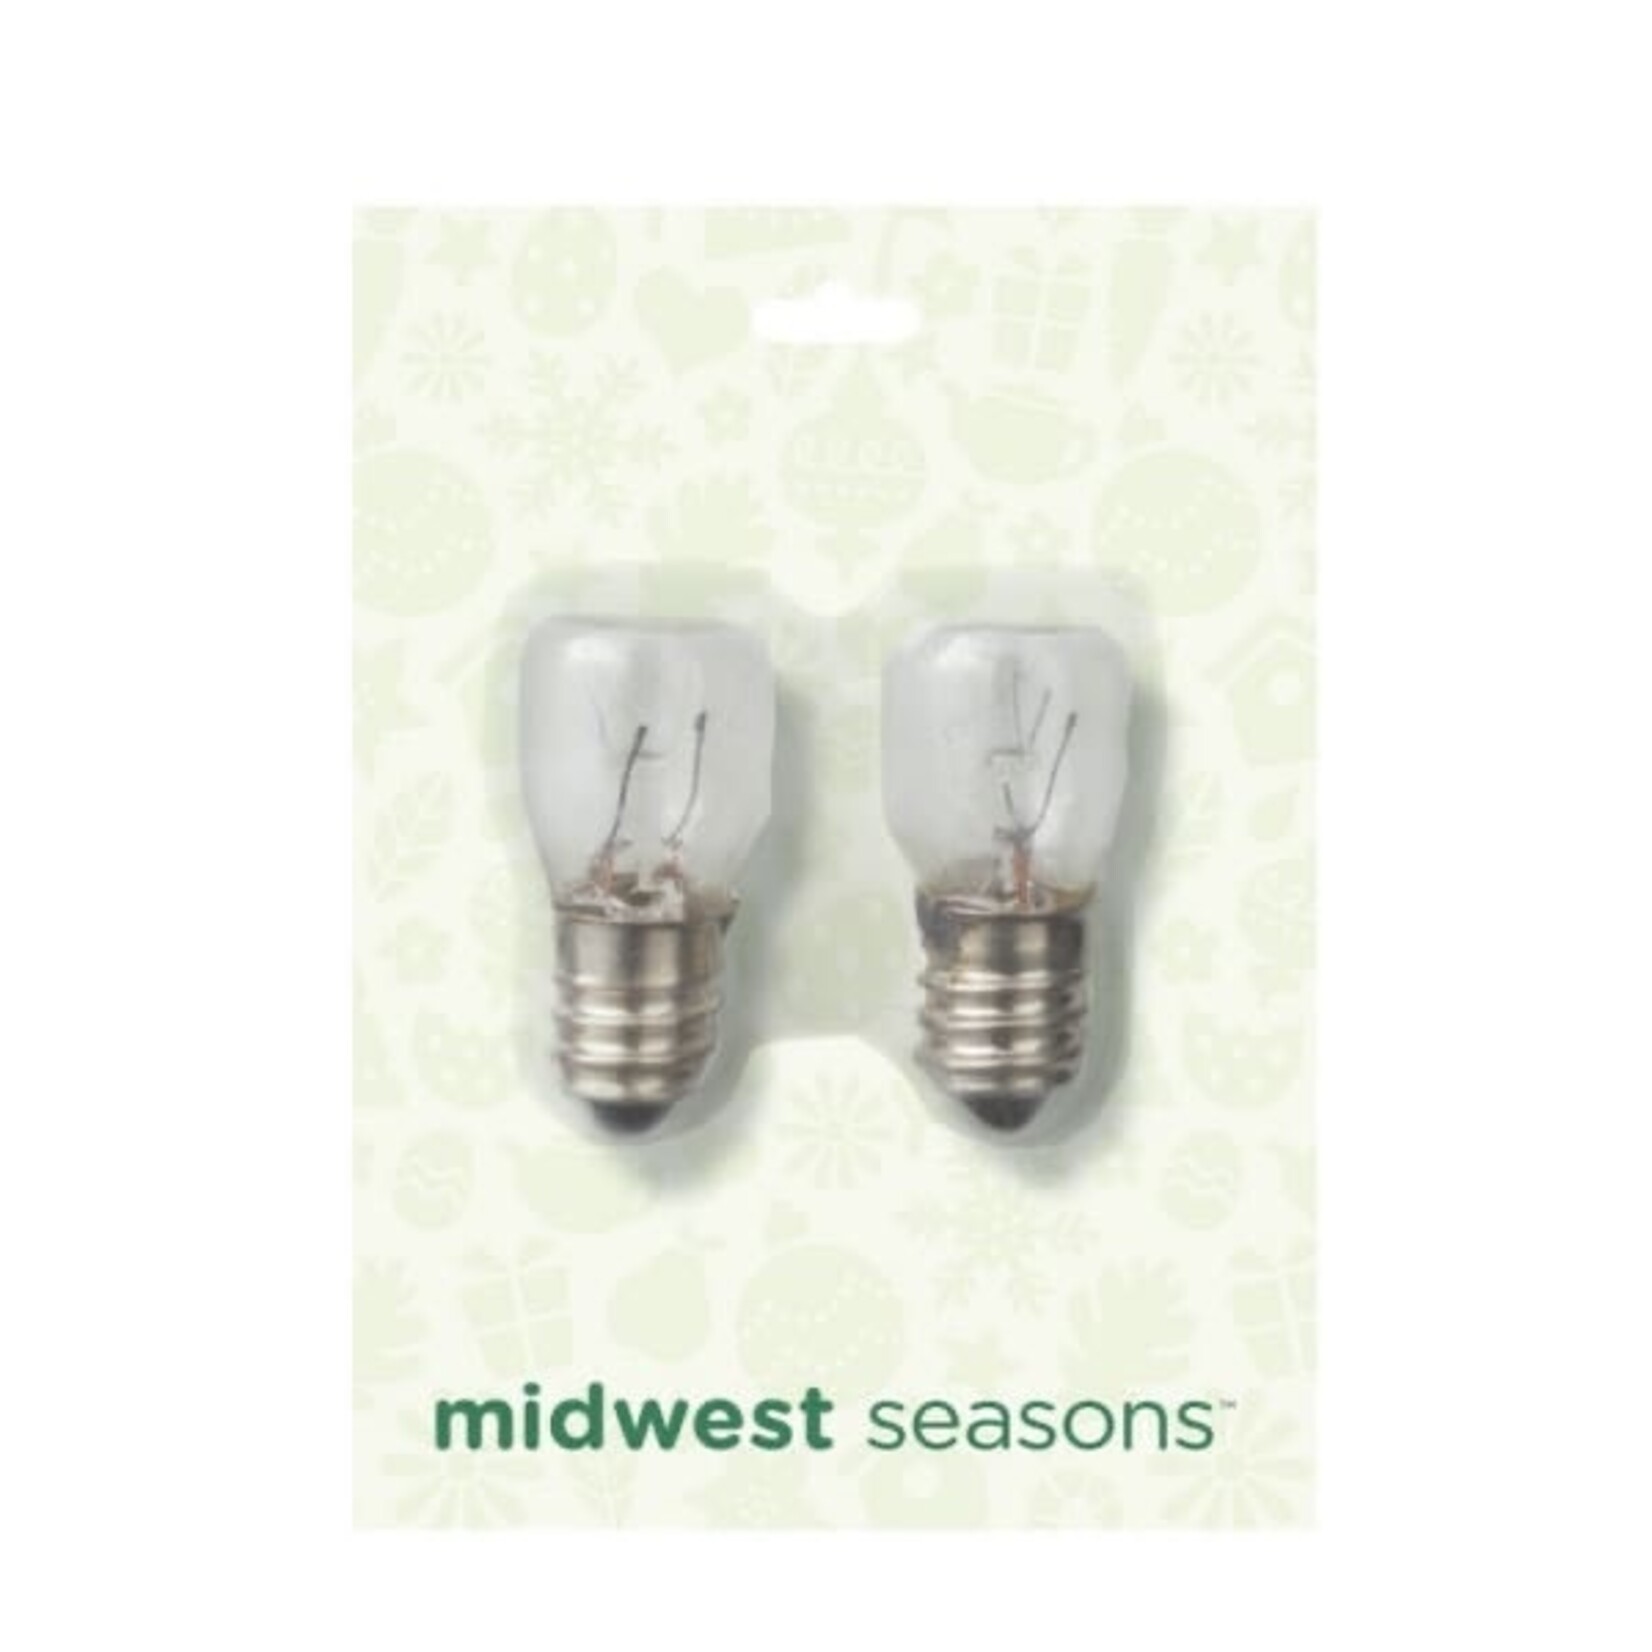 Midwest CBK Night Light Replacement Bulbs, 3 Watt